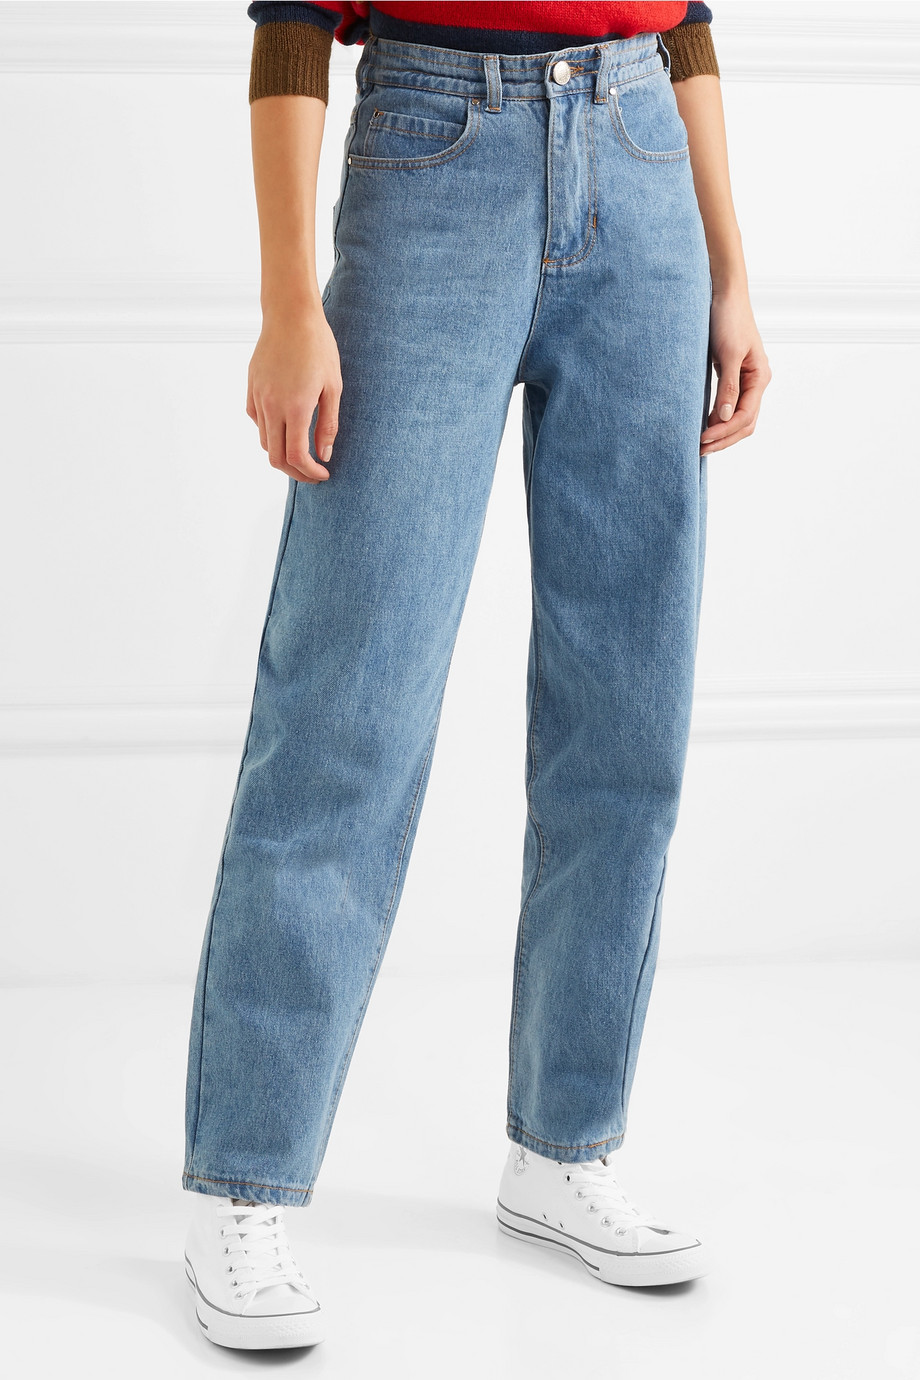 jeans-elastico-cintura